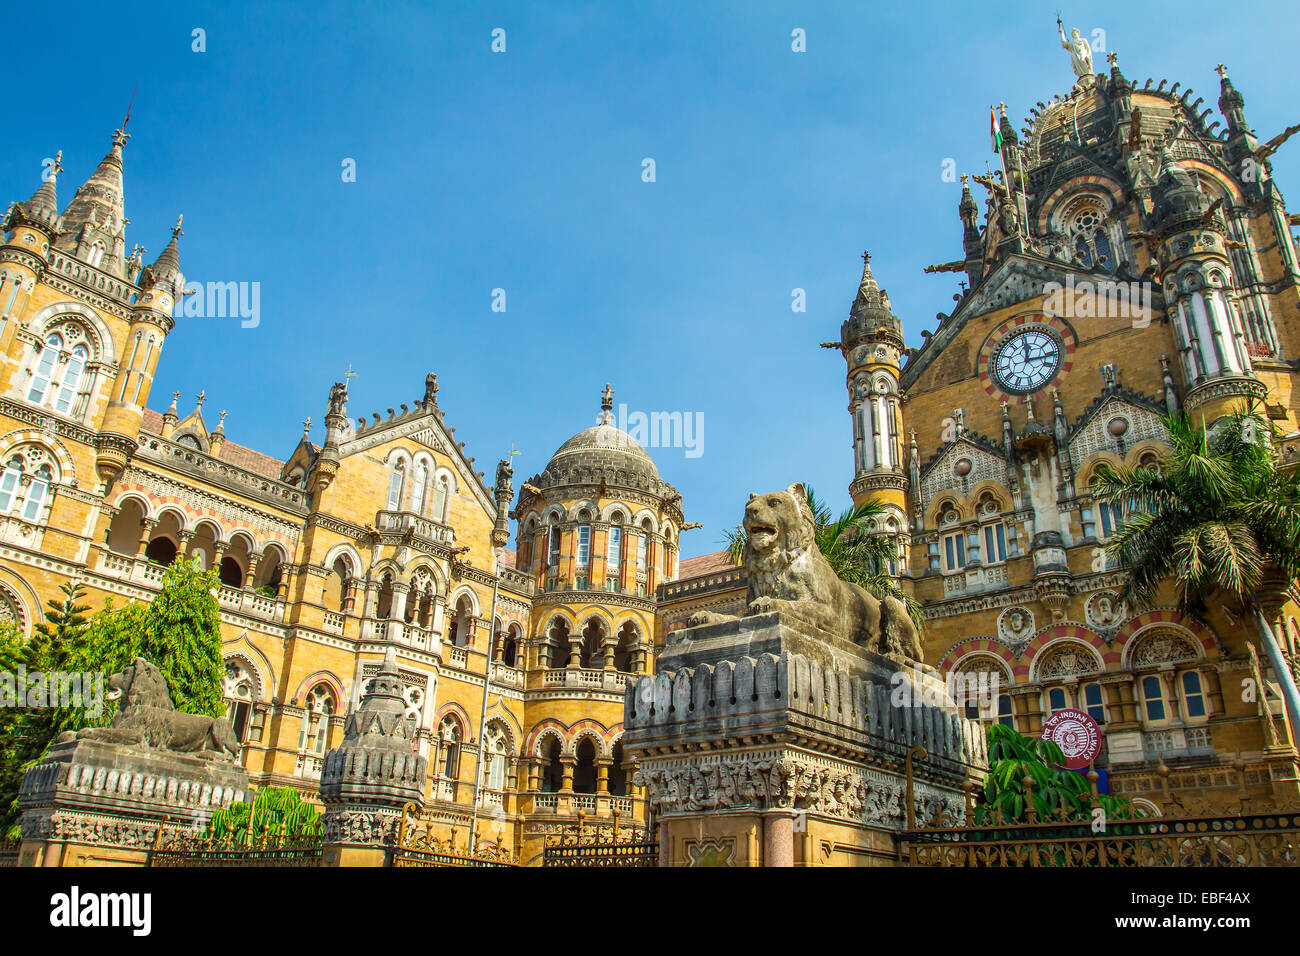 Terminus Chatrapati Shivaji Terminus Victoria précédemment connu sous le nom de Mumbai, Inde Banque D'Images